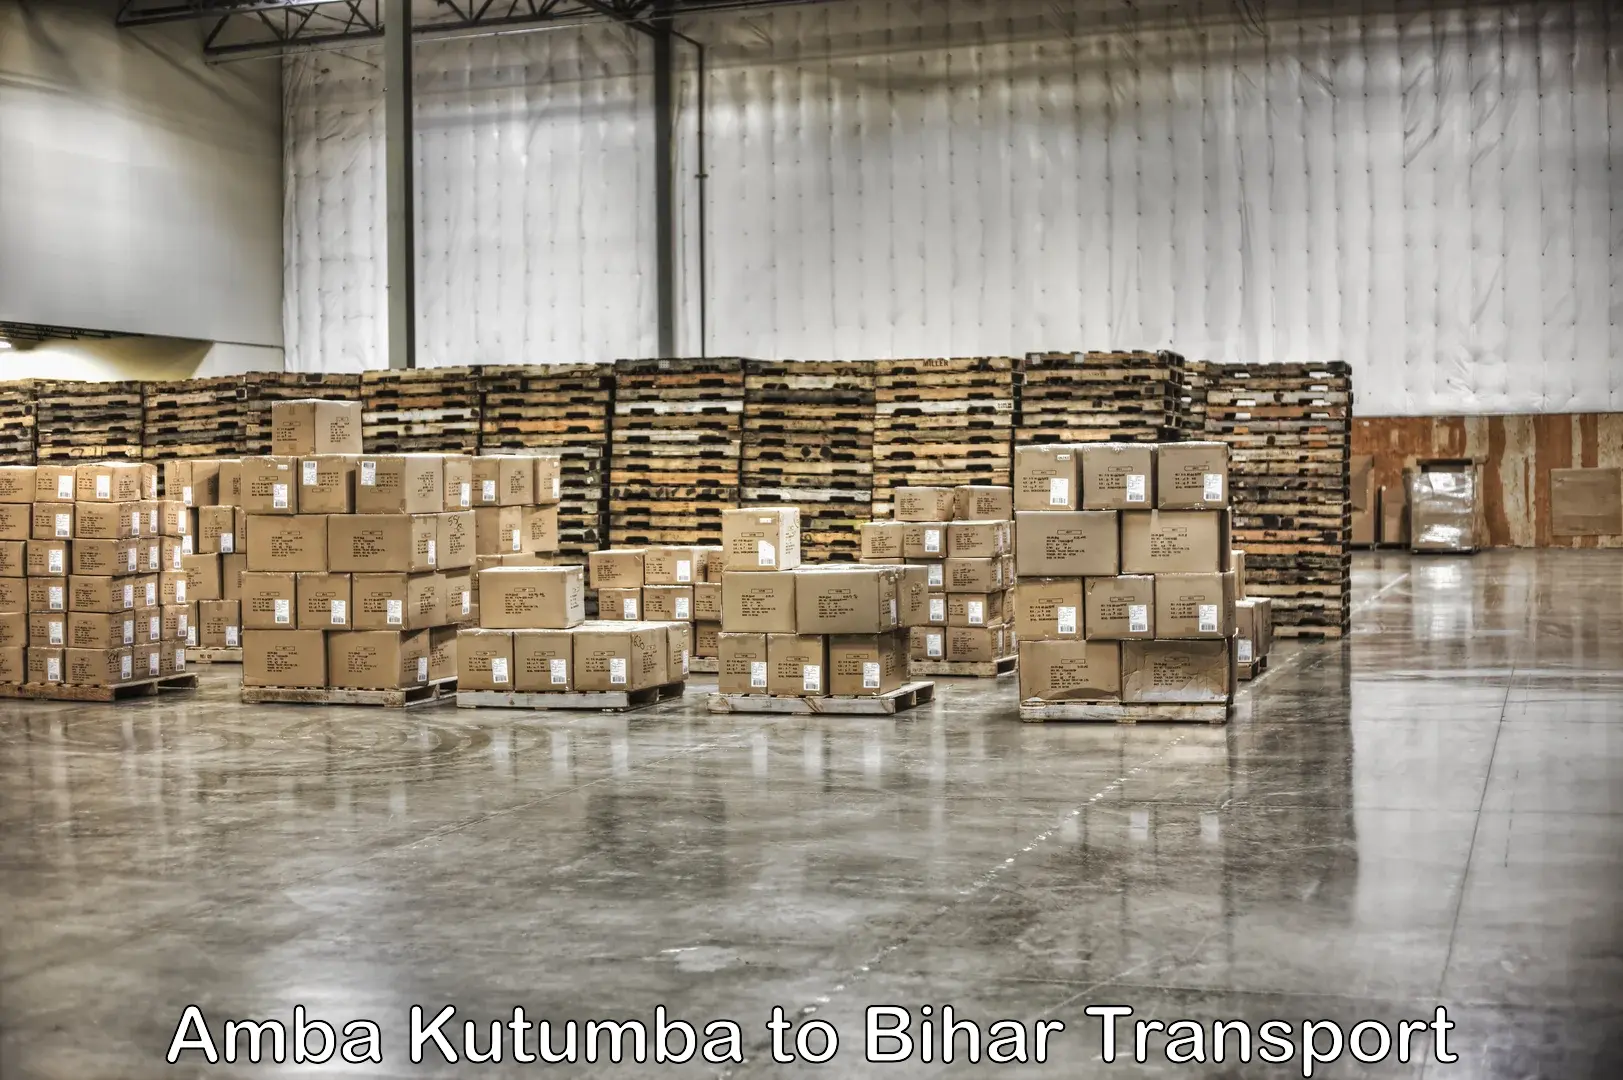 Shipping services Amba Kutumba to Amba Kutumba